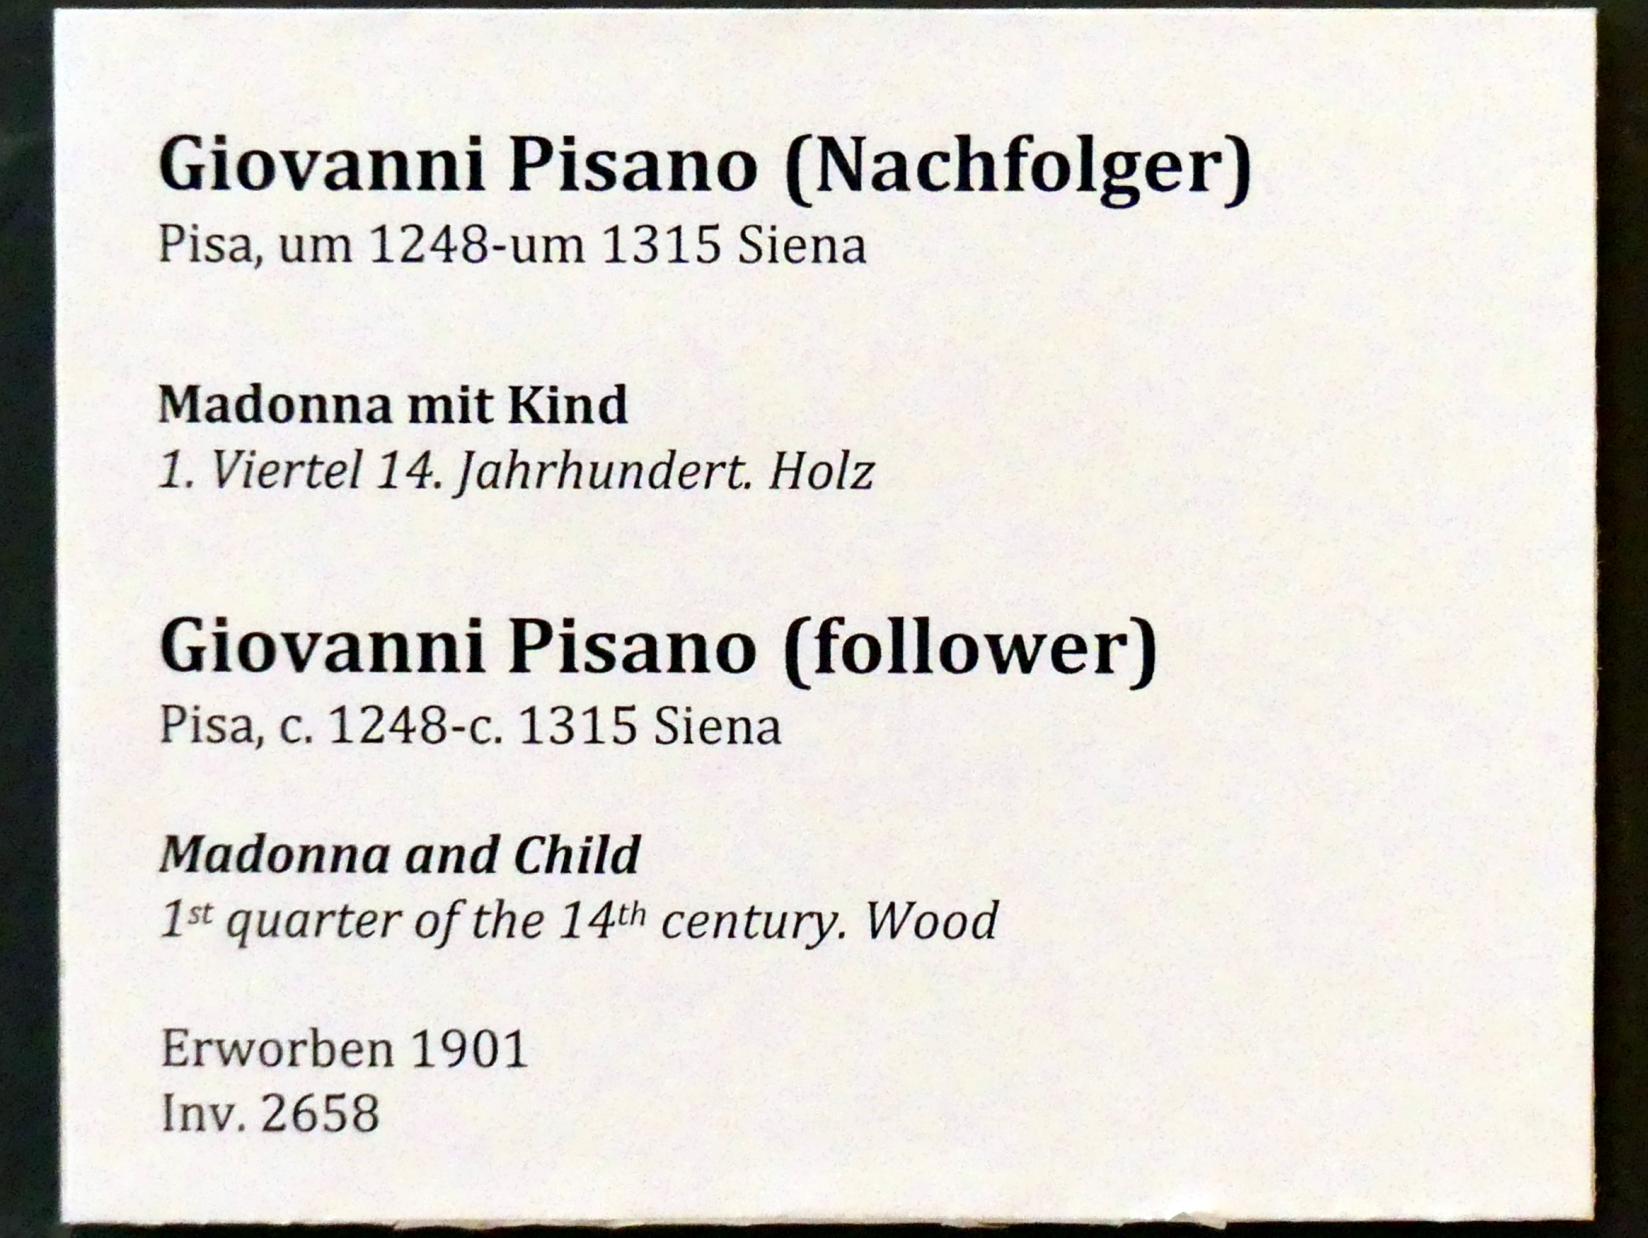 Giovanni Pisano (Nachfolger) (1312), Madonna mit Kind, Berlin, Bode-Museum, Saal 108, 1. Viertel 14. Jhd., Bild 3/3